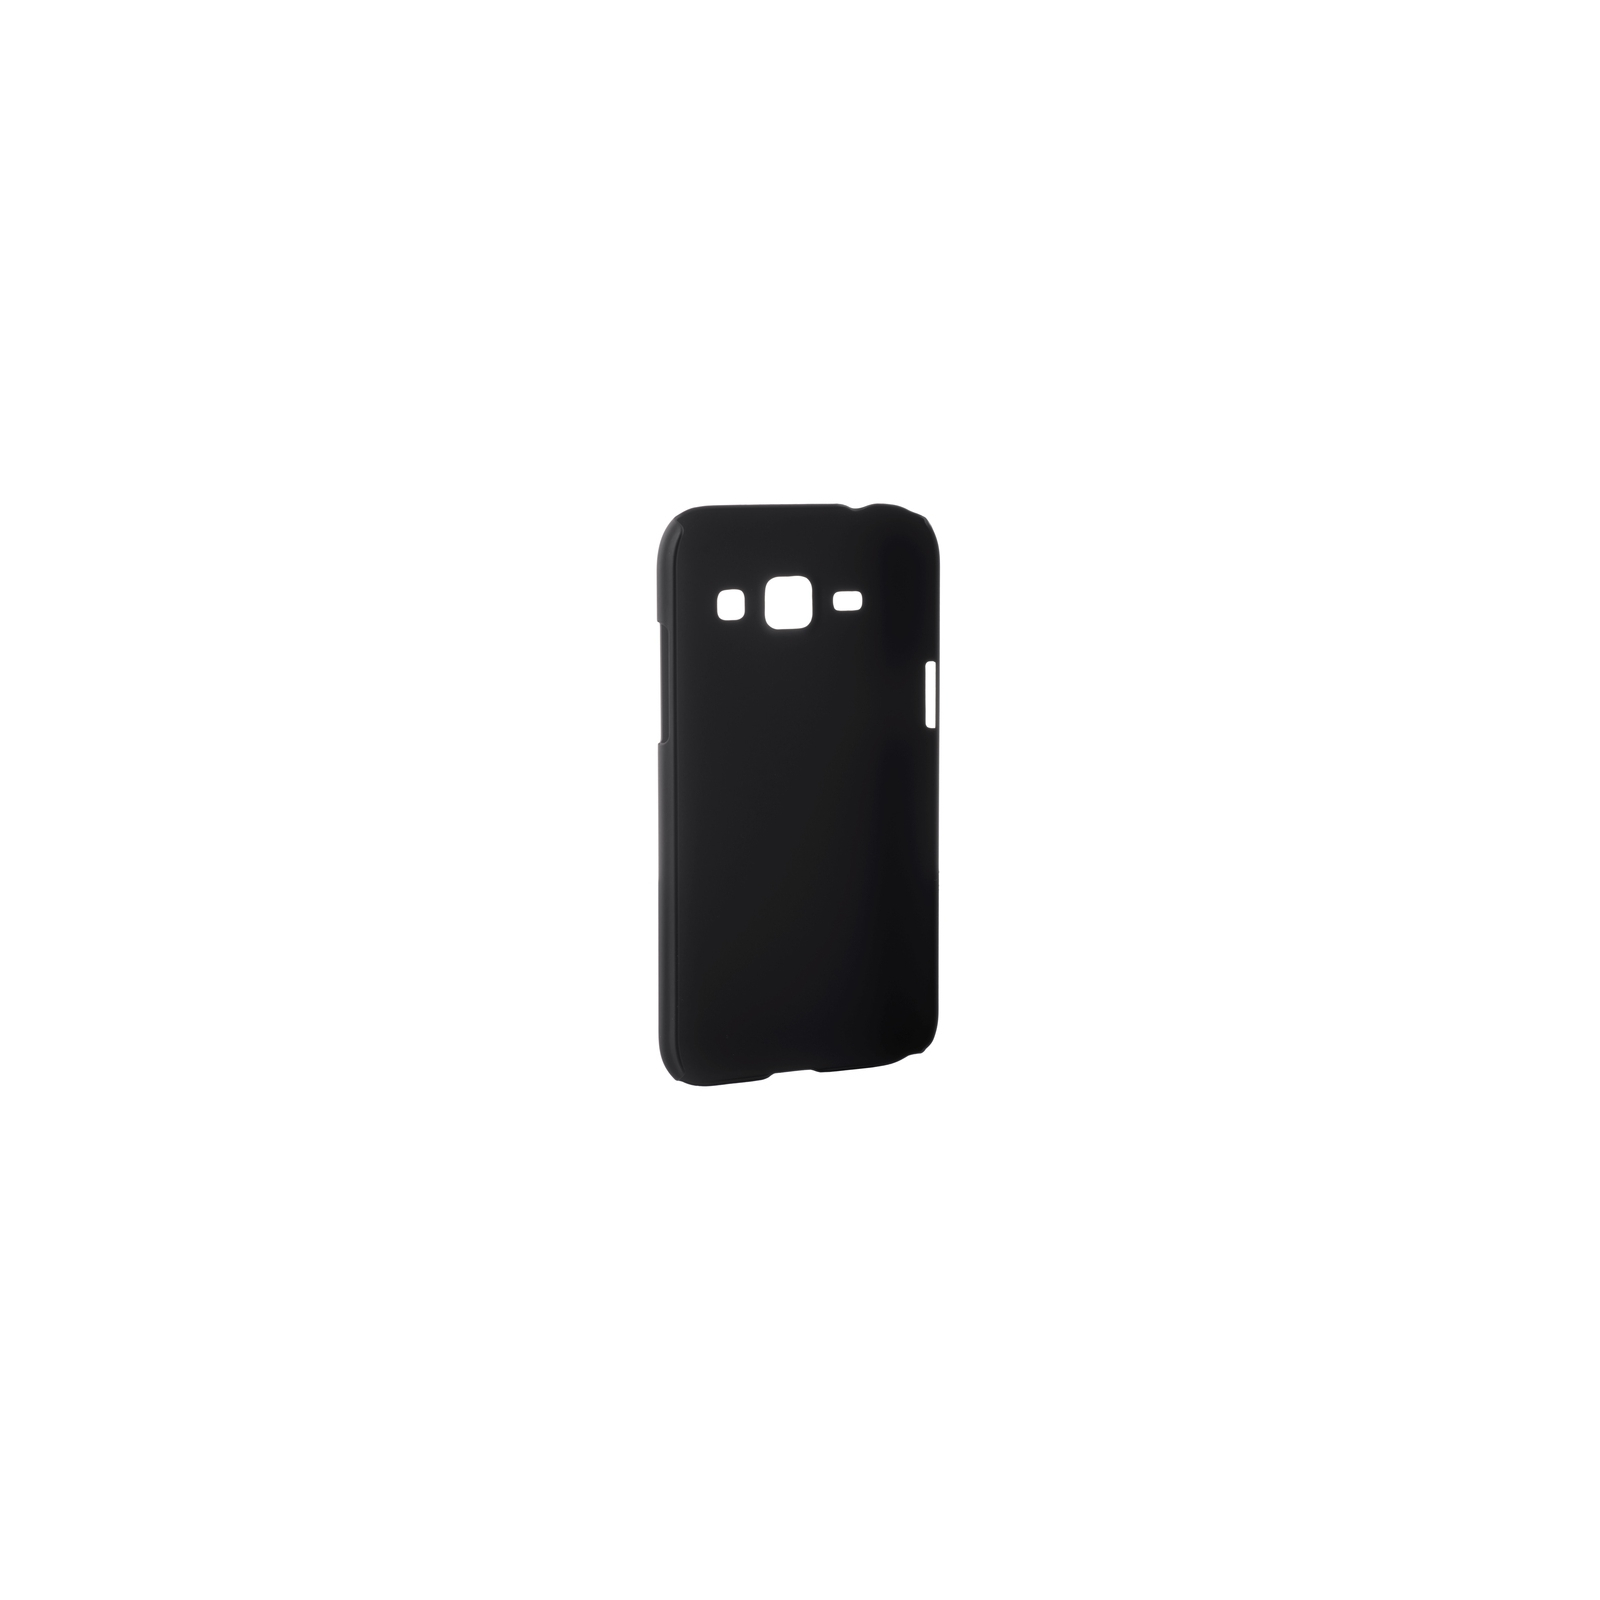 Чехол для мобильного телефона Nillkin для Samsung J1/J100 - Super Frosted Shield (черный) (6218469) изображение 2